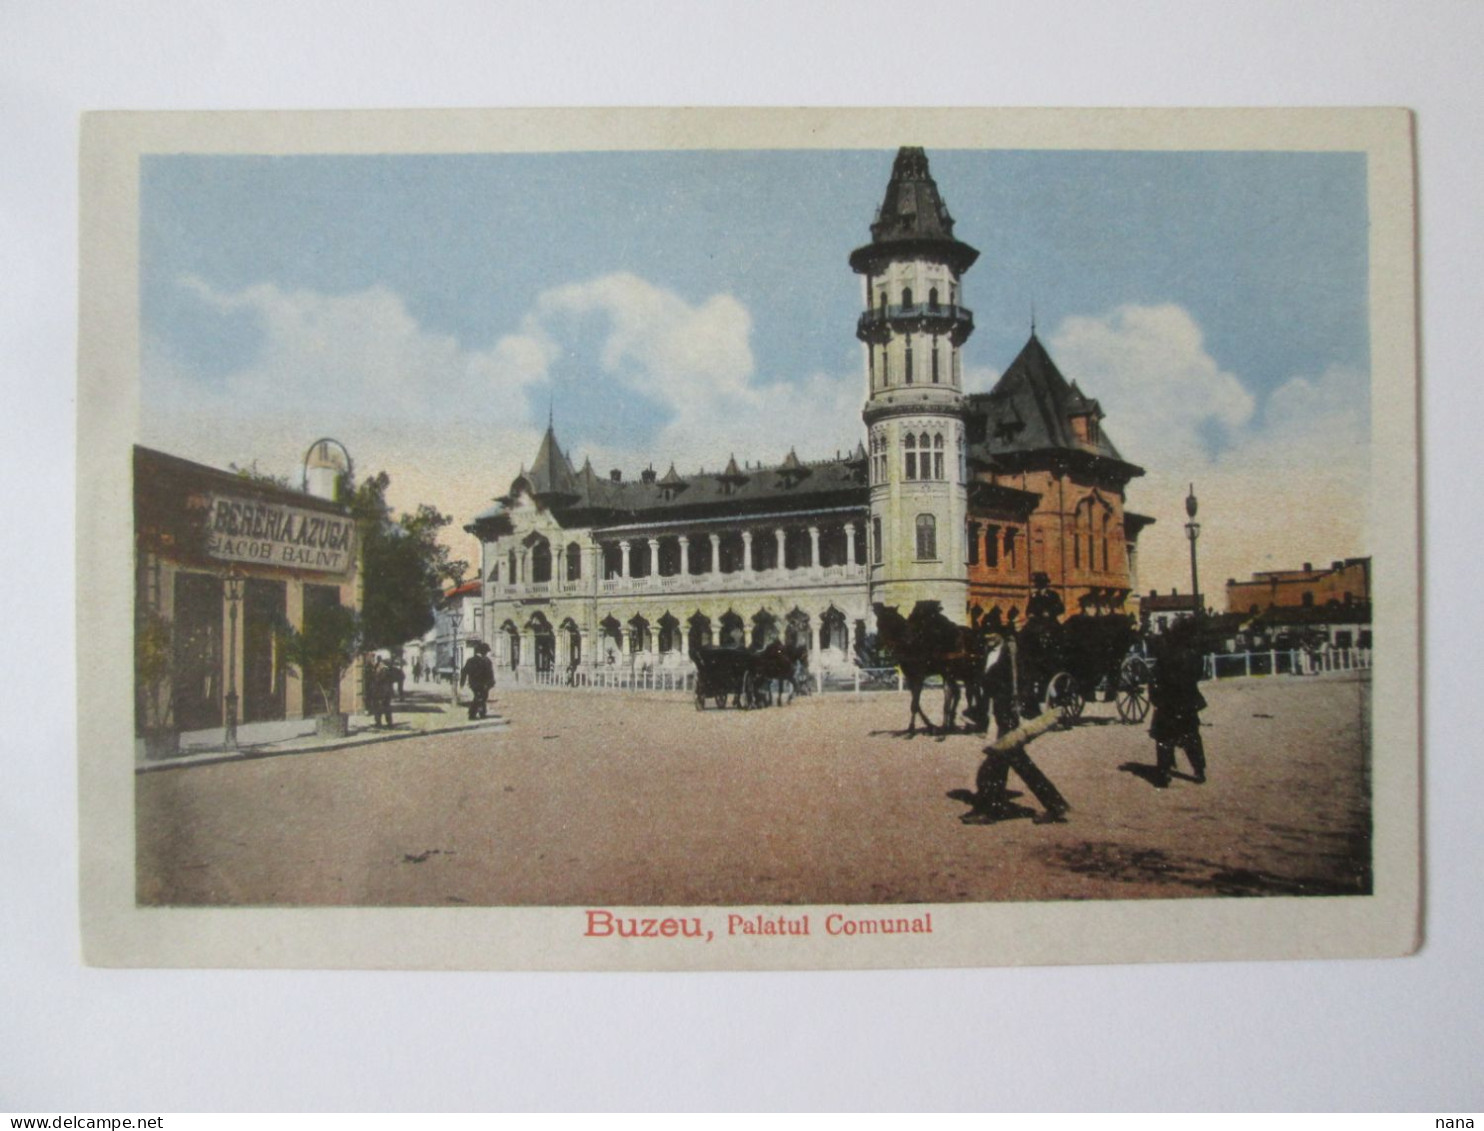 Romania-Buzău:Brasseria Azuga Carte Postale Vers 1915/Azuga Brewery Unused Postcard About 1915 - Rumänien